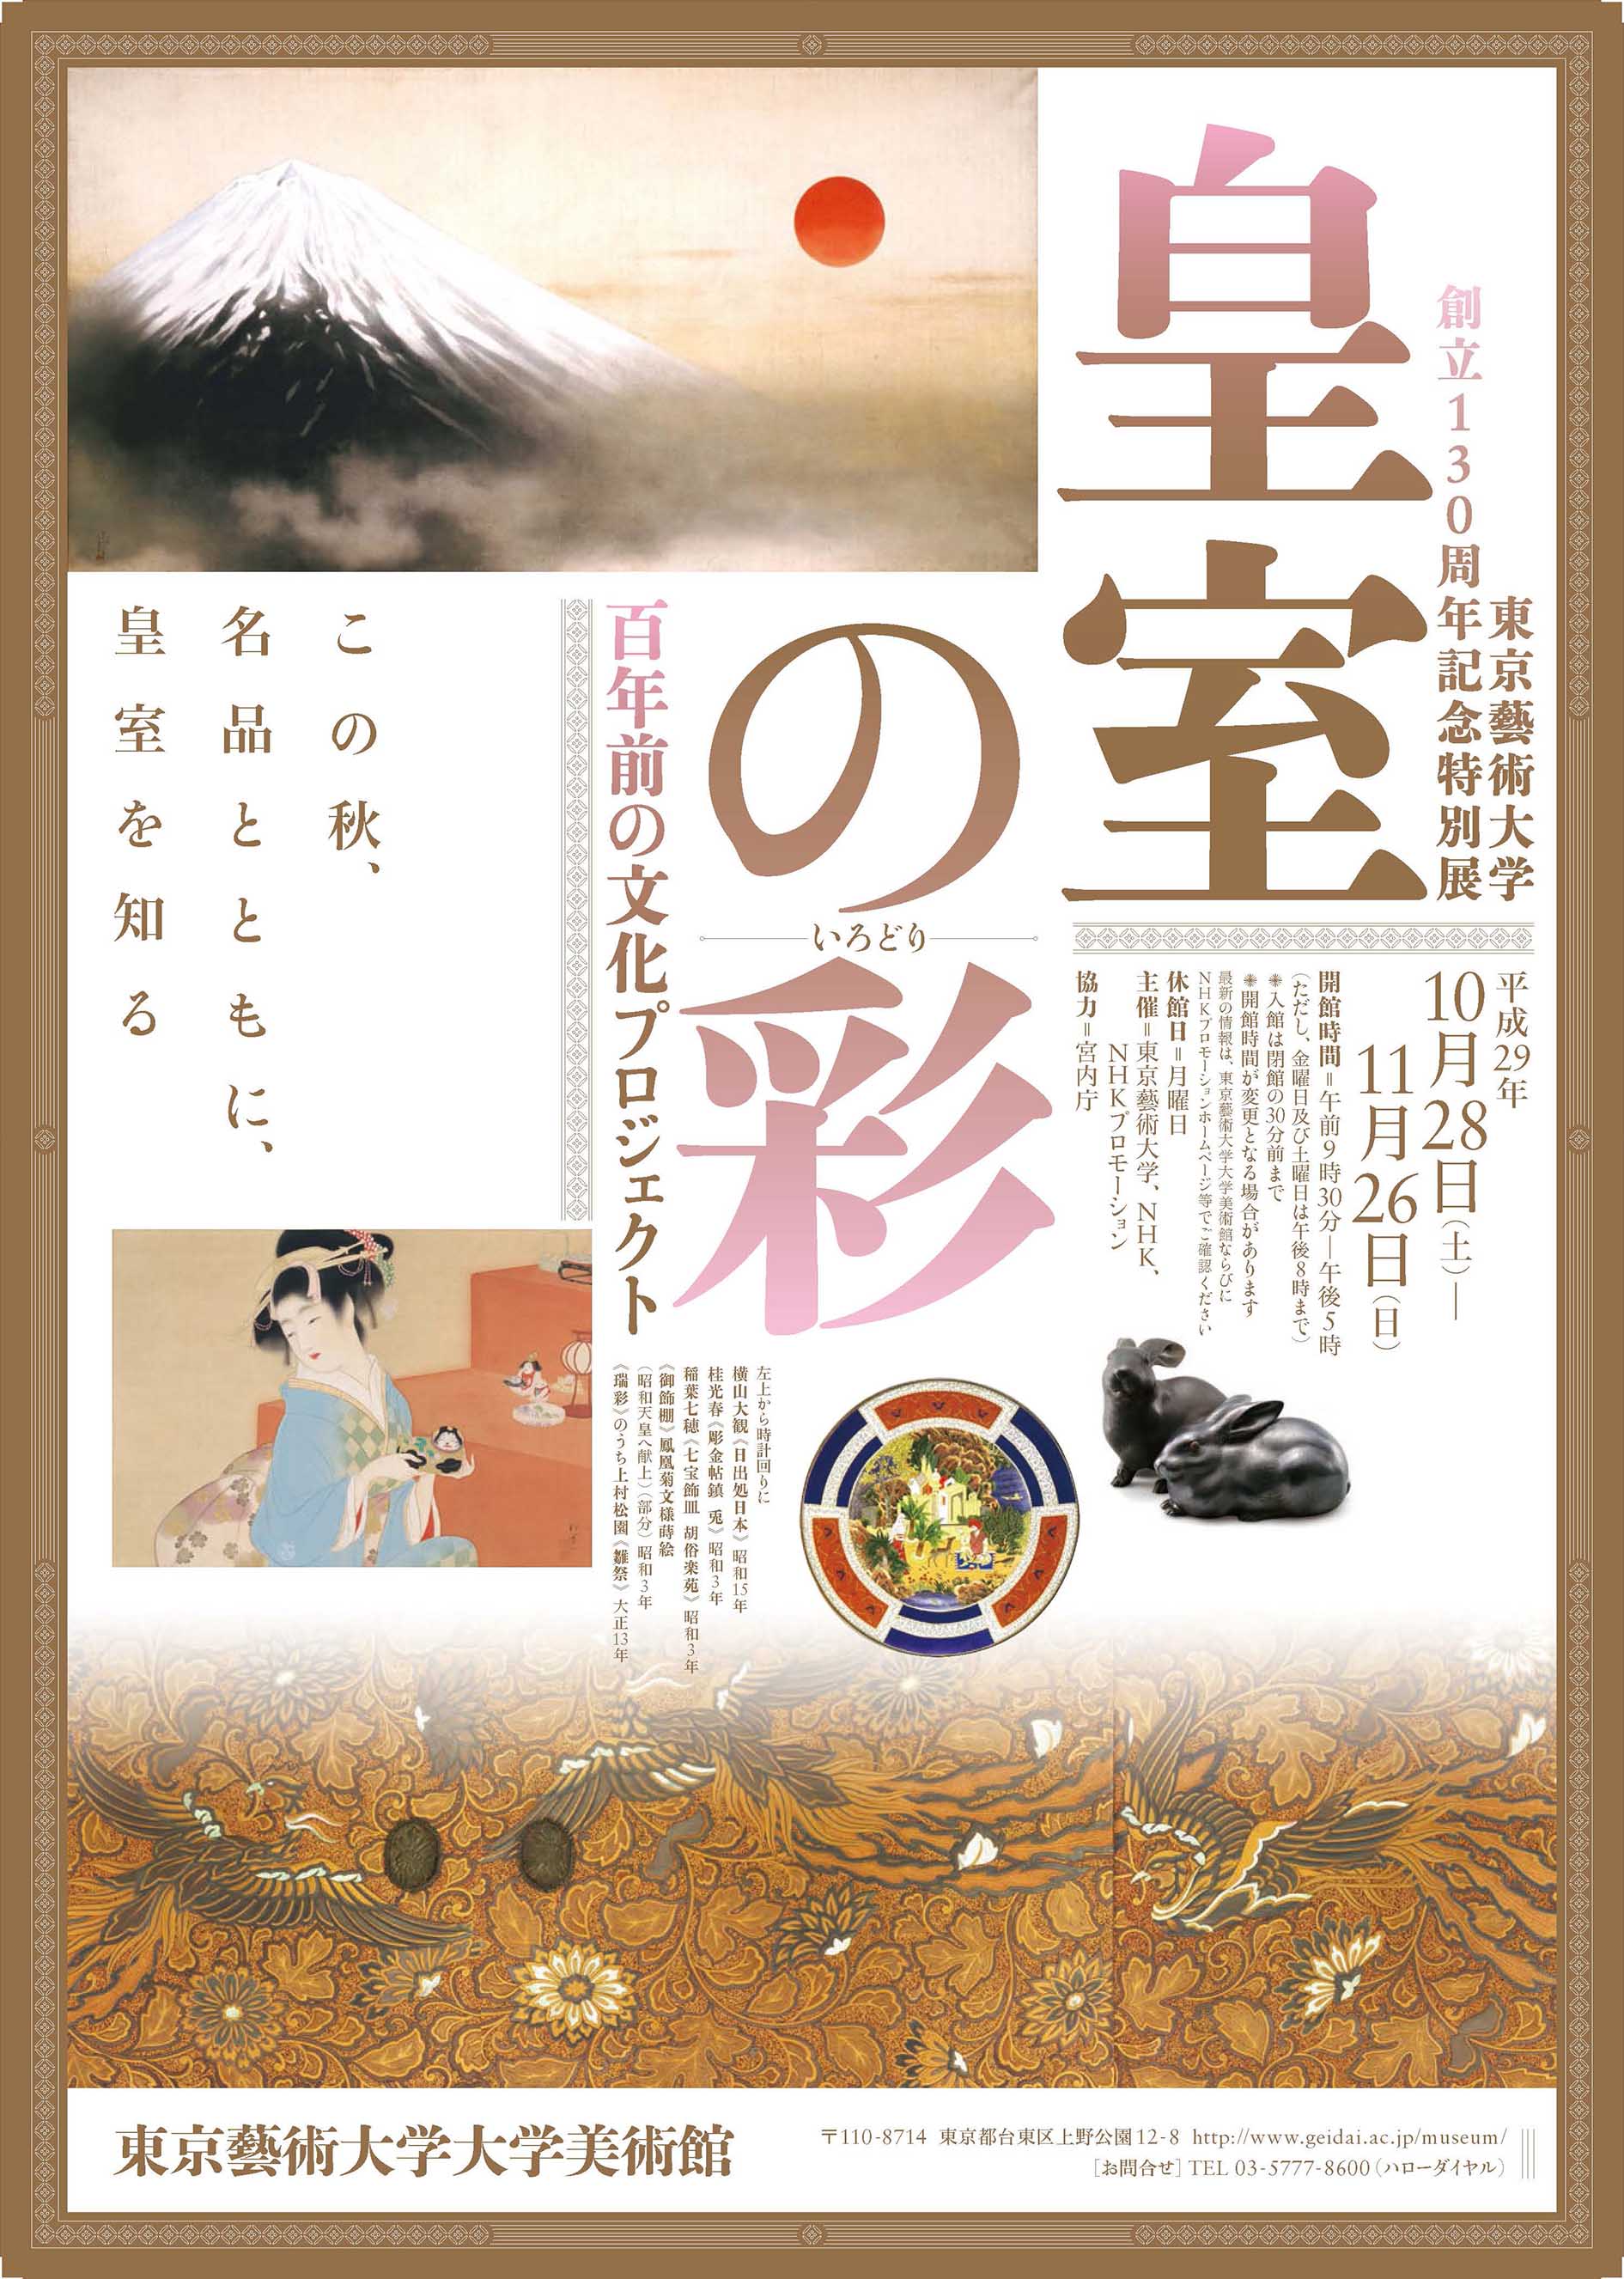 東京藝術大学創立130周年記念特別展「皇室の彩（いろどり）百年前の文化プロジェクト」